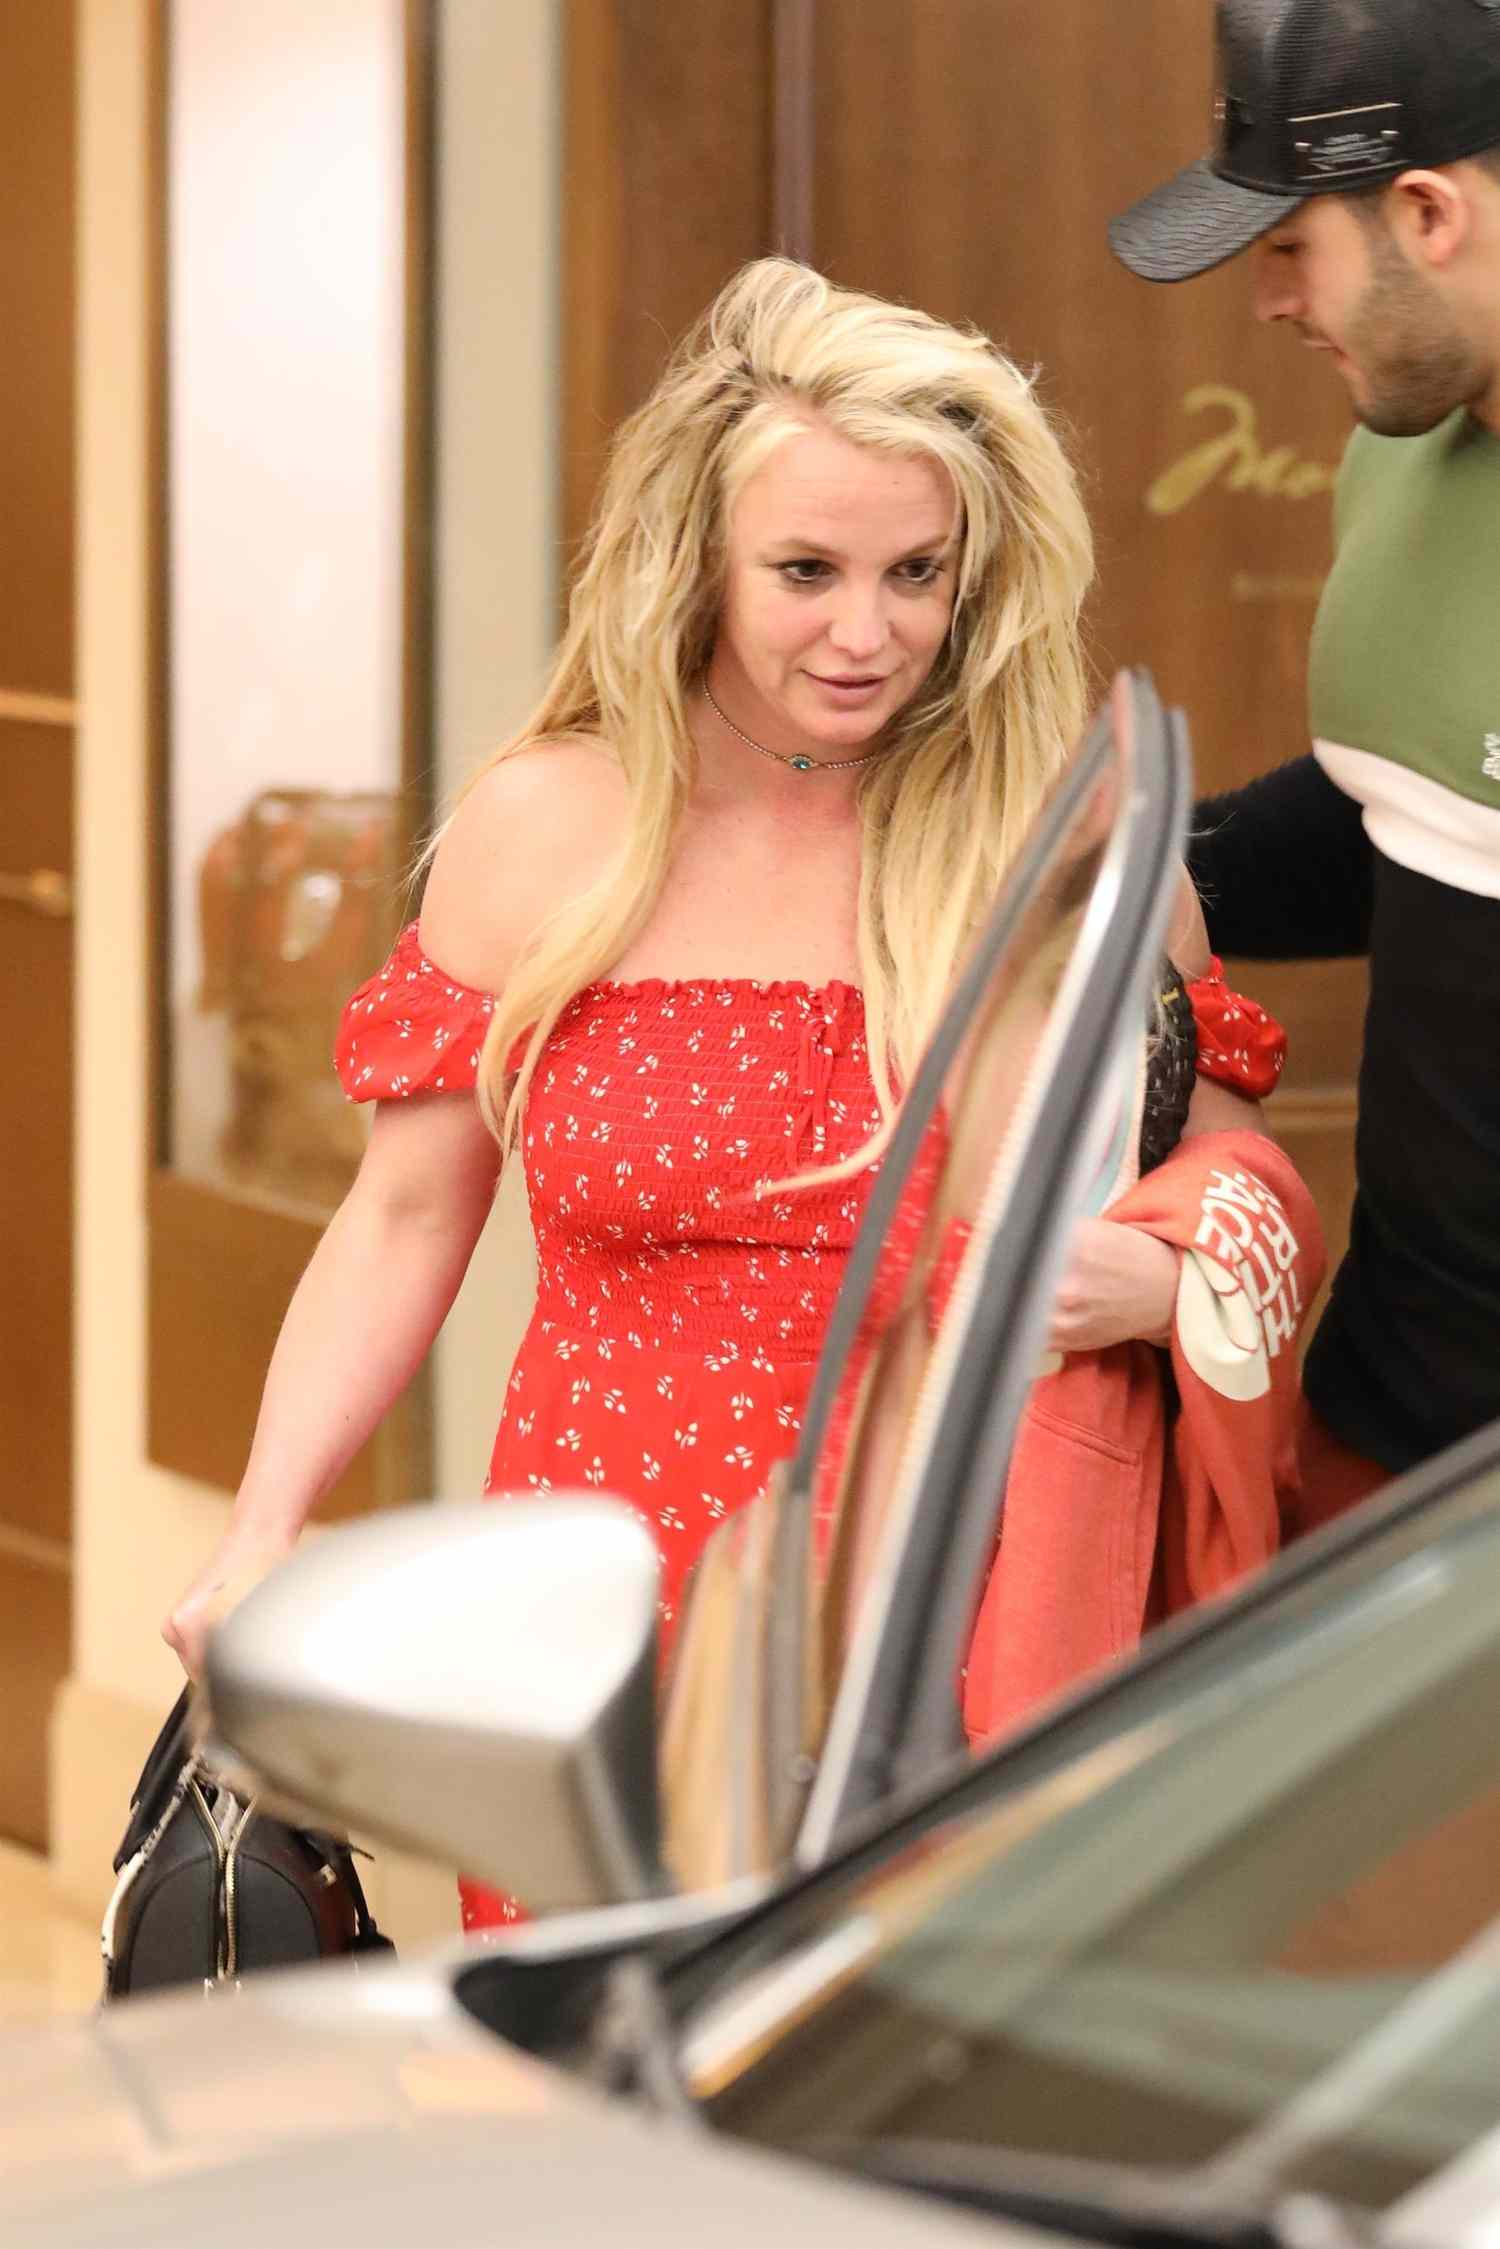 PREMIUM EXC Britney Spears